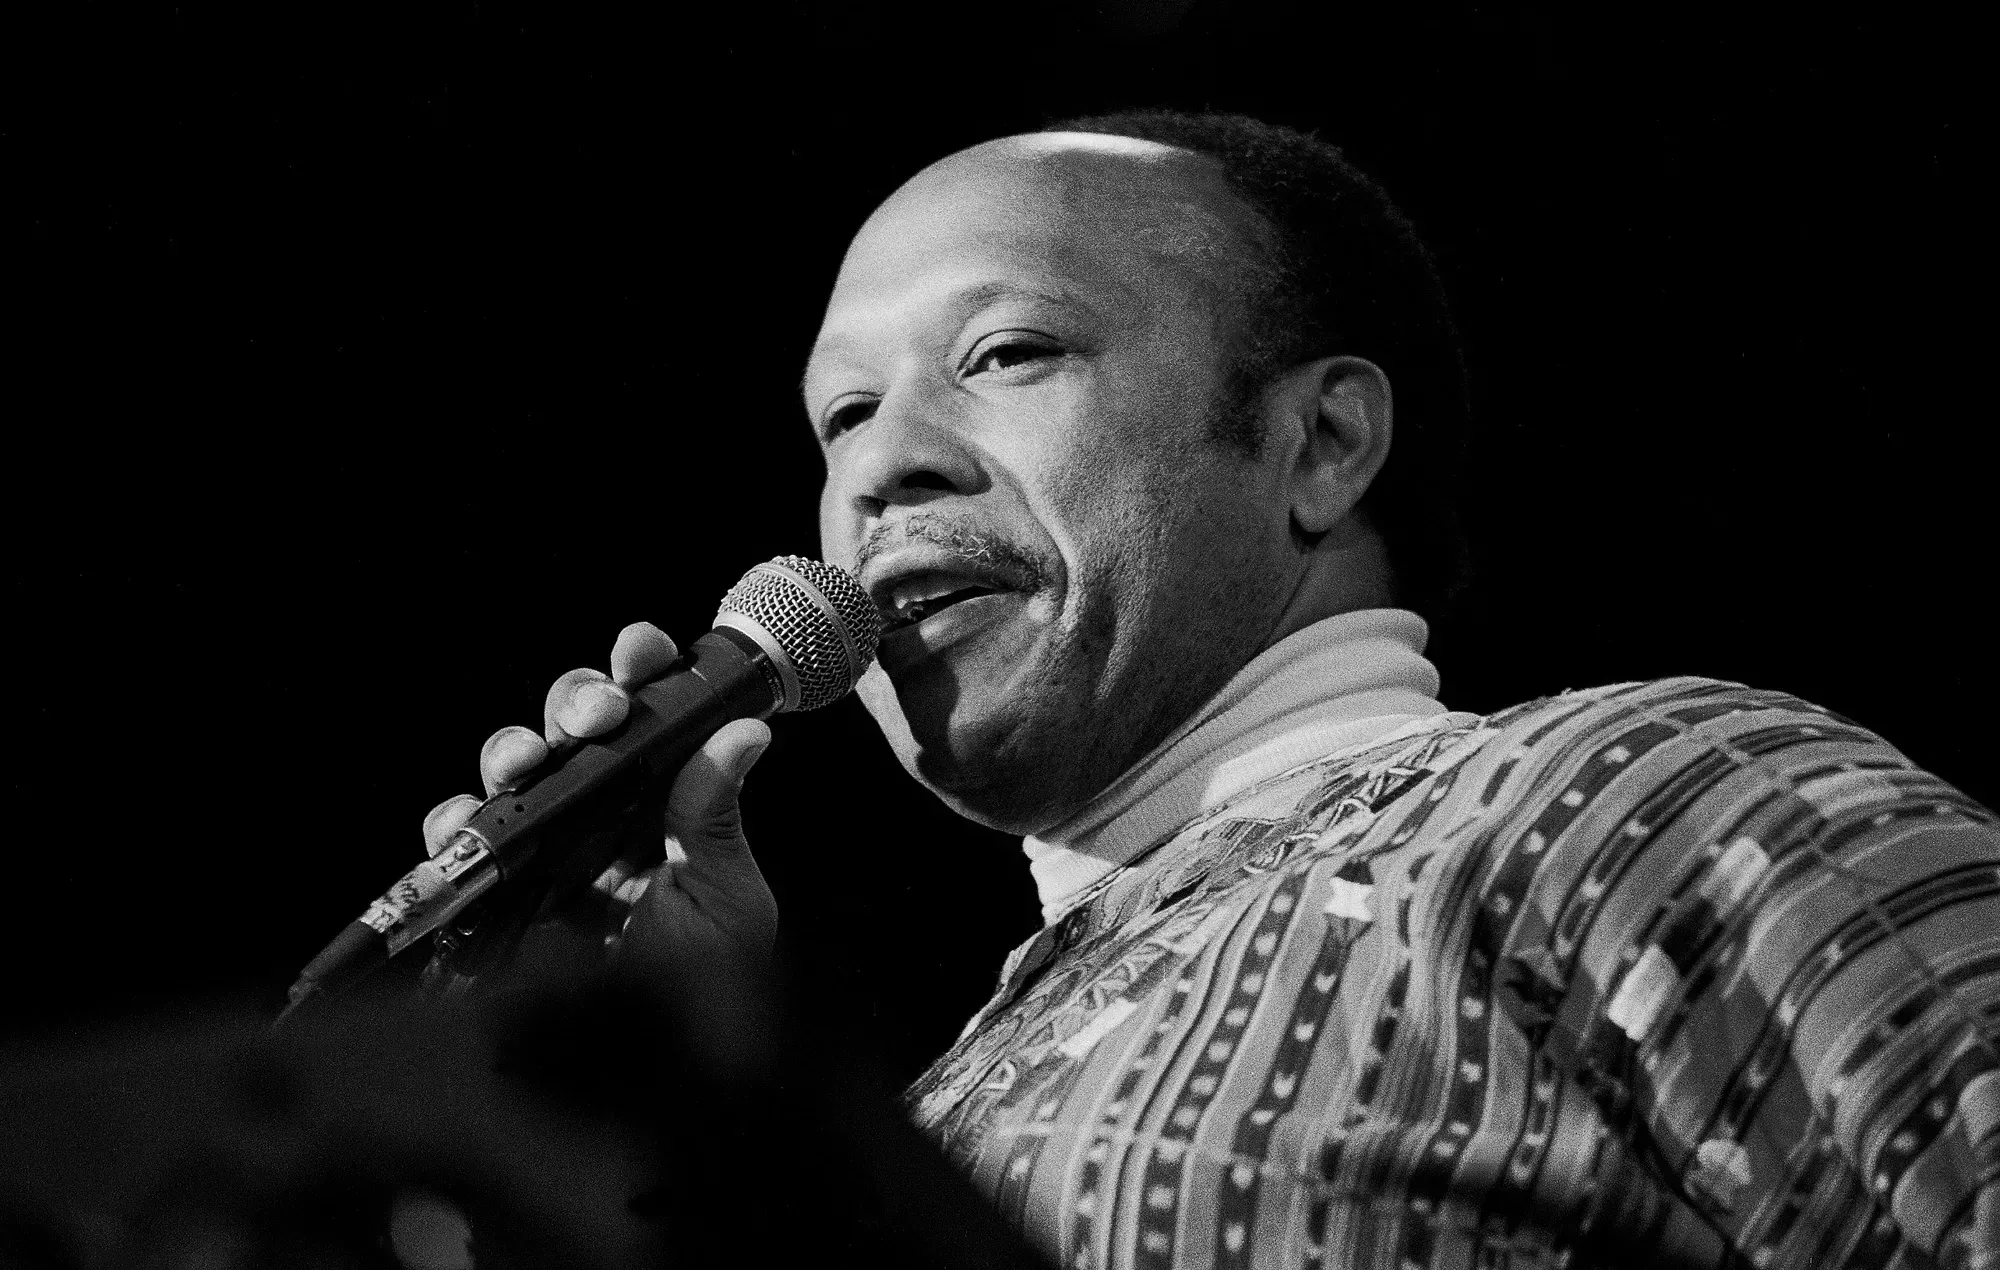 Les McCann, pionero del jazz, sampleado por Notorious B.I.G., Snoop Dogg y Dr. Dre, ha muerto